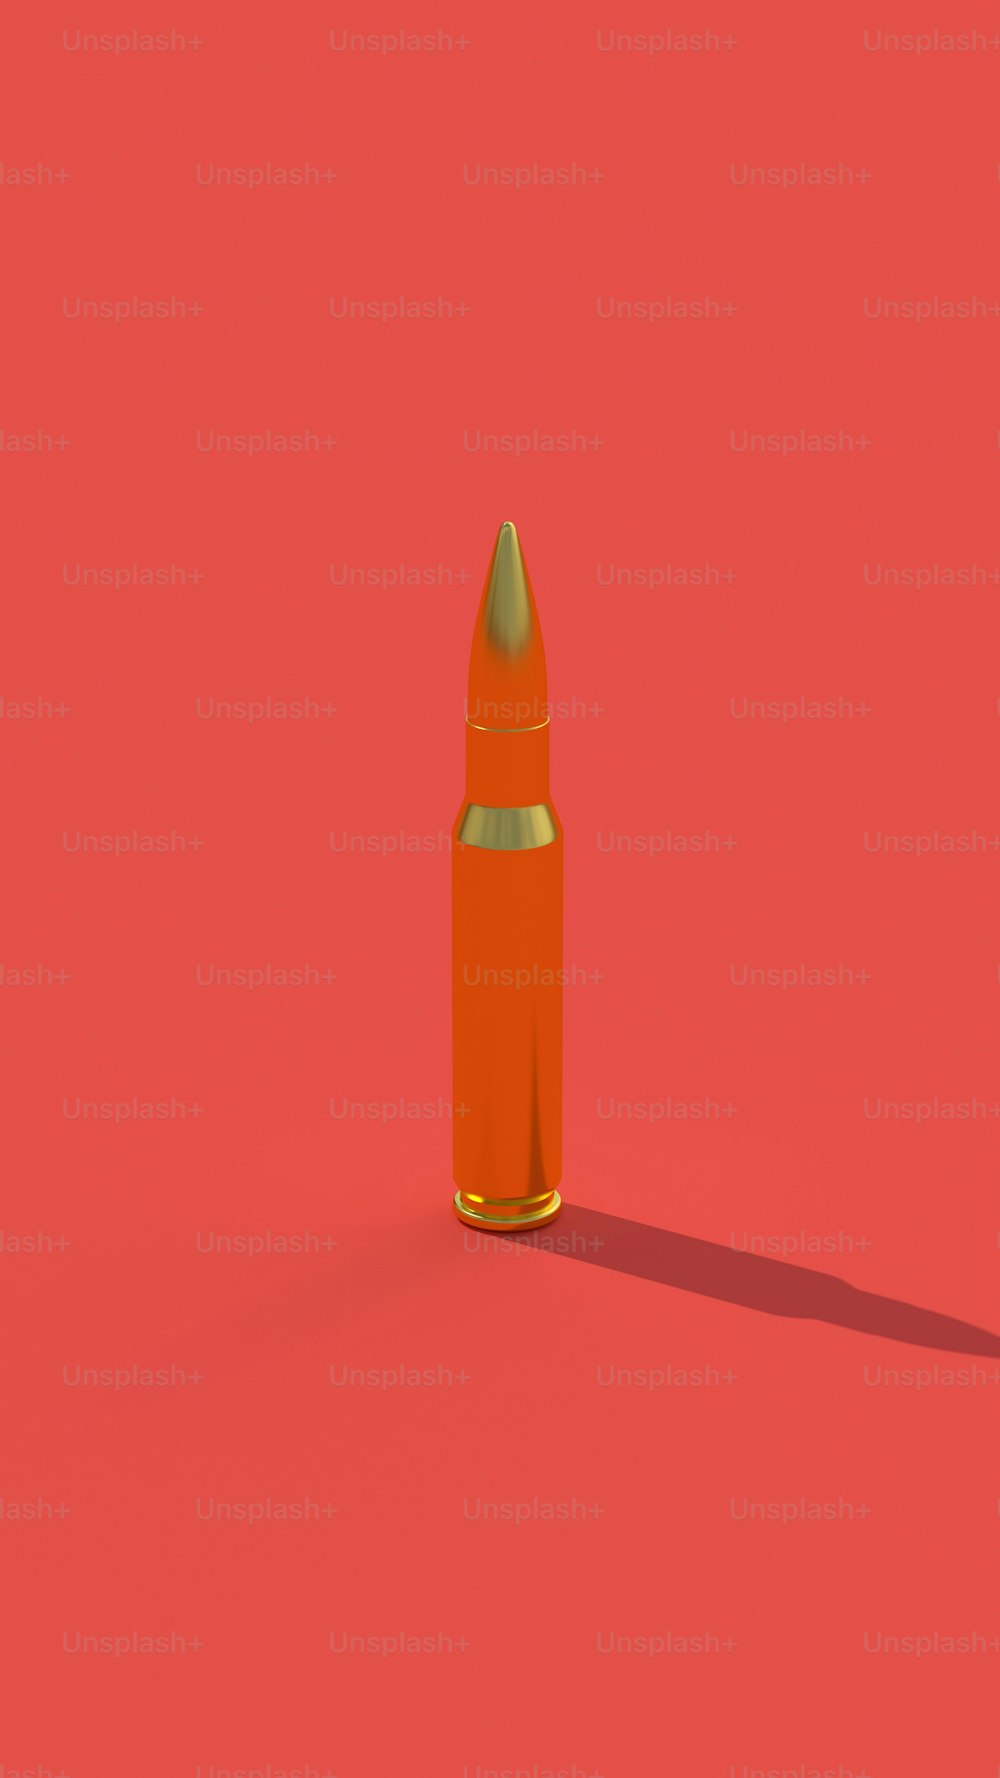 Un proiettile arancione su sfondo rosso